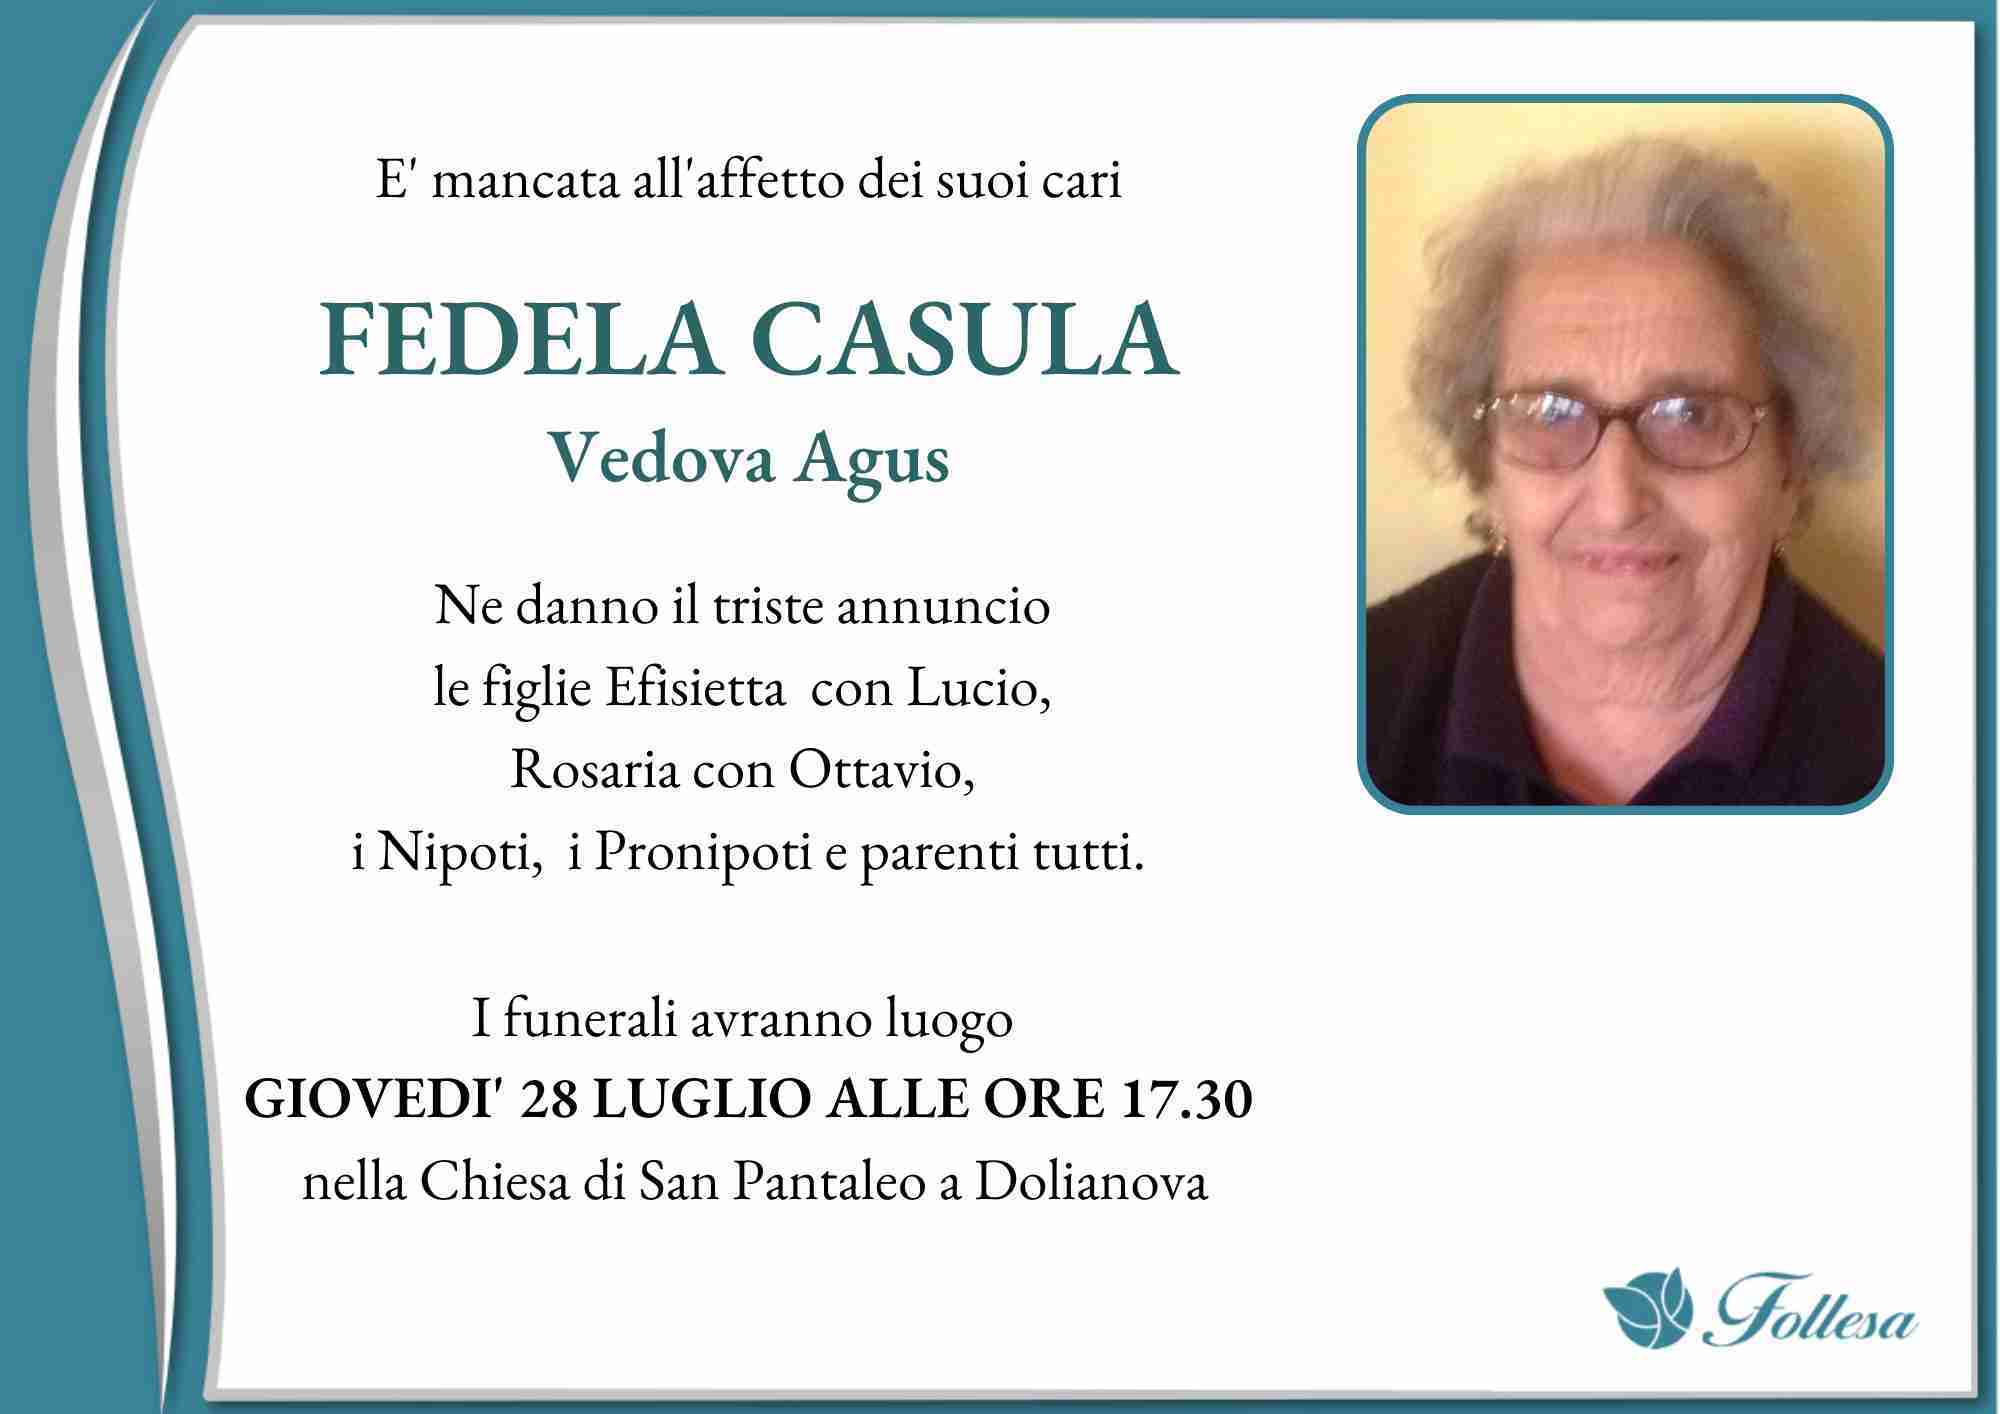 Fedela Casula